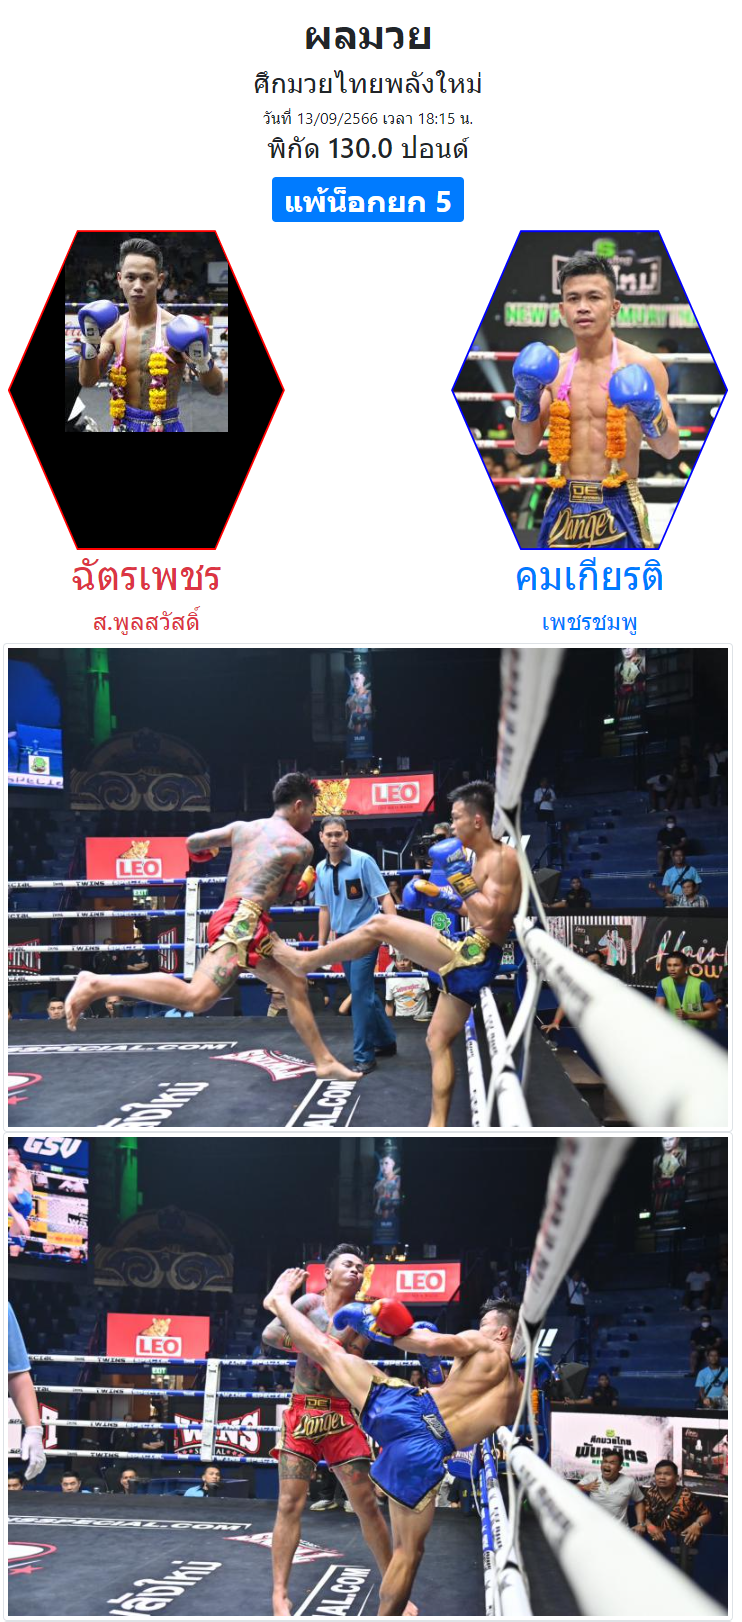 ผลมวย-คู่เอกศึกมวยไทยพลังใหม่-ช่วงที่-1-ฉัตรเพชร-ส.พูลสวัสดิ์-vs-คมเกียรติ-เพชรชมพู-01